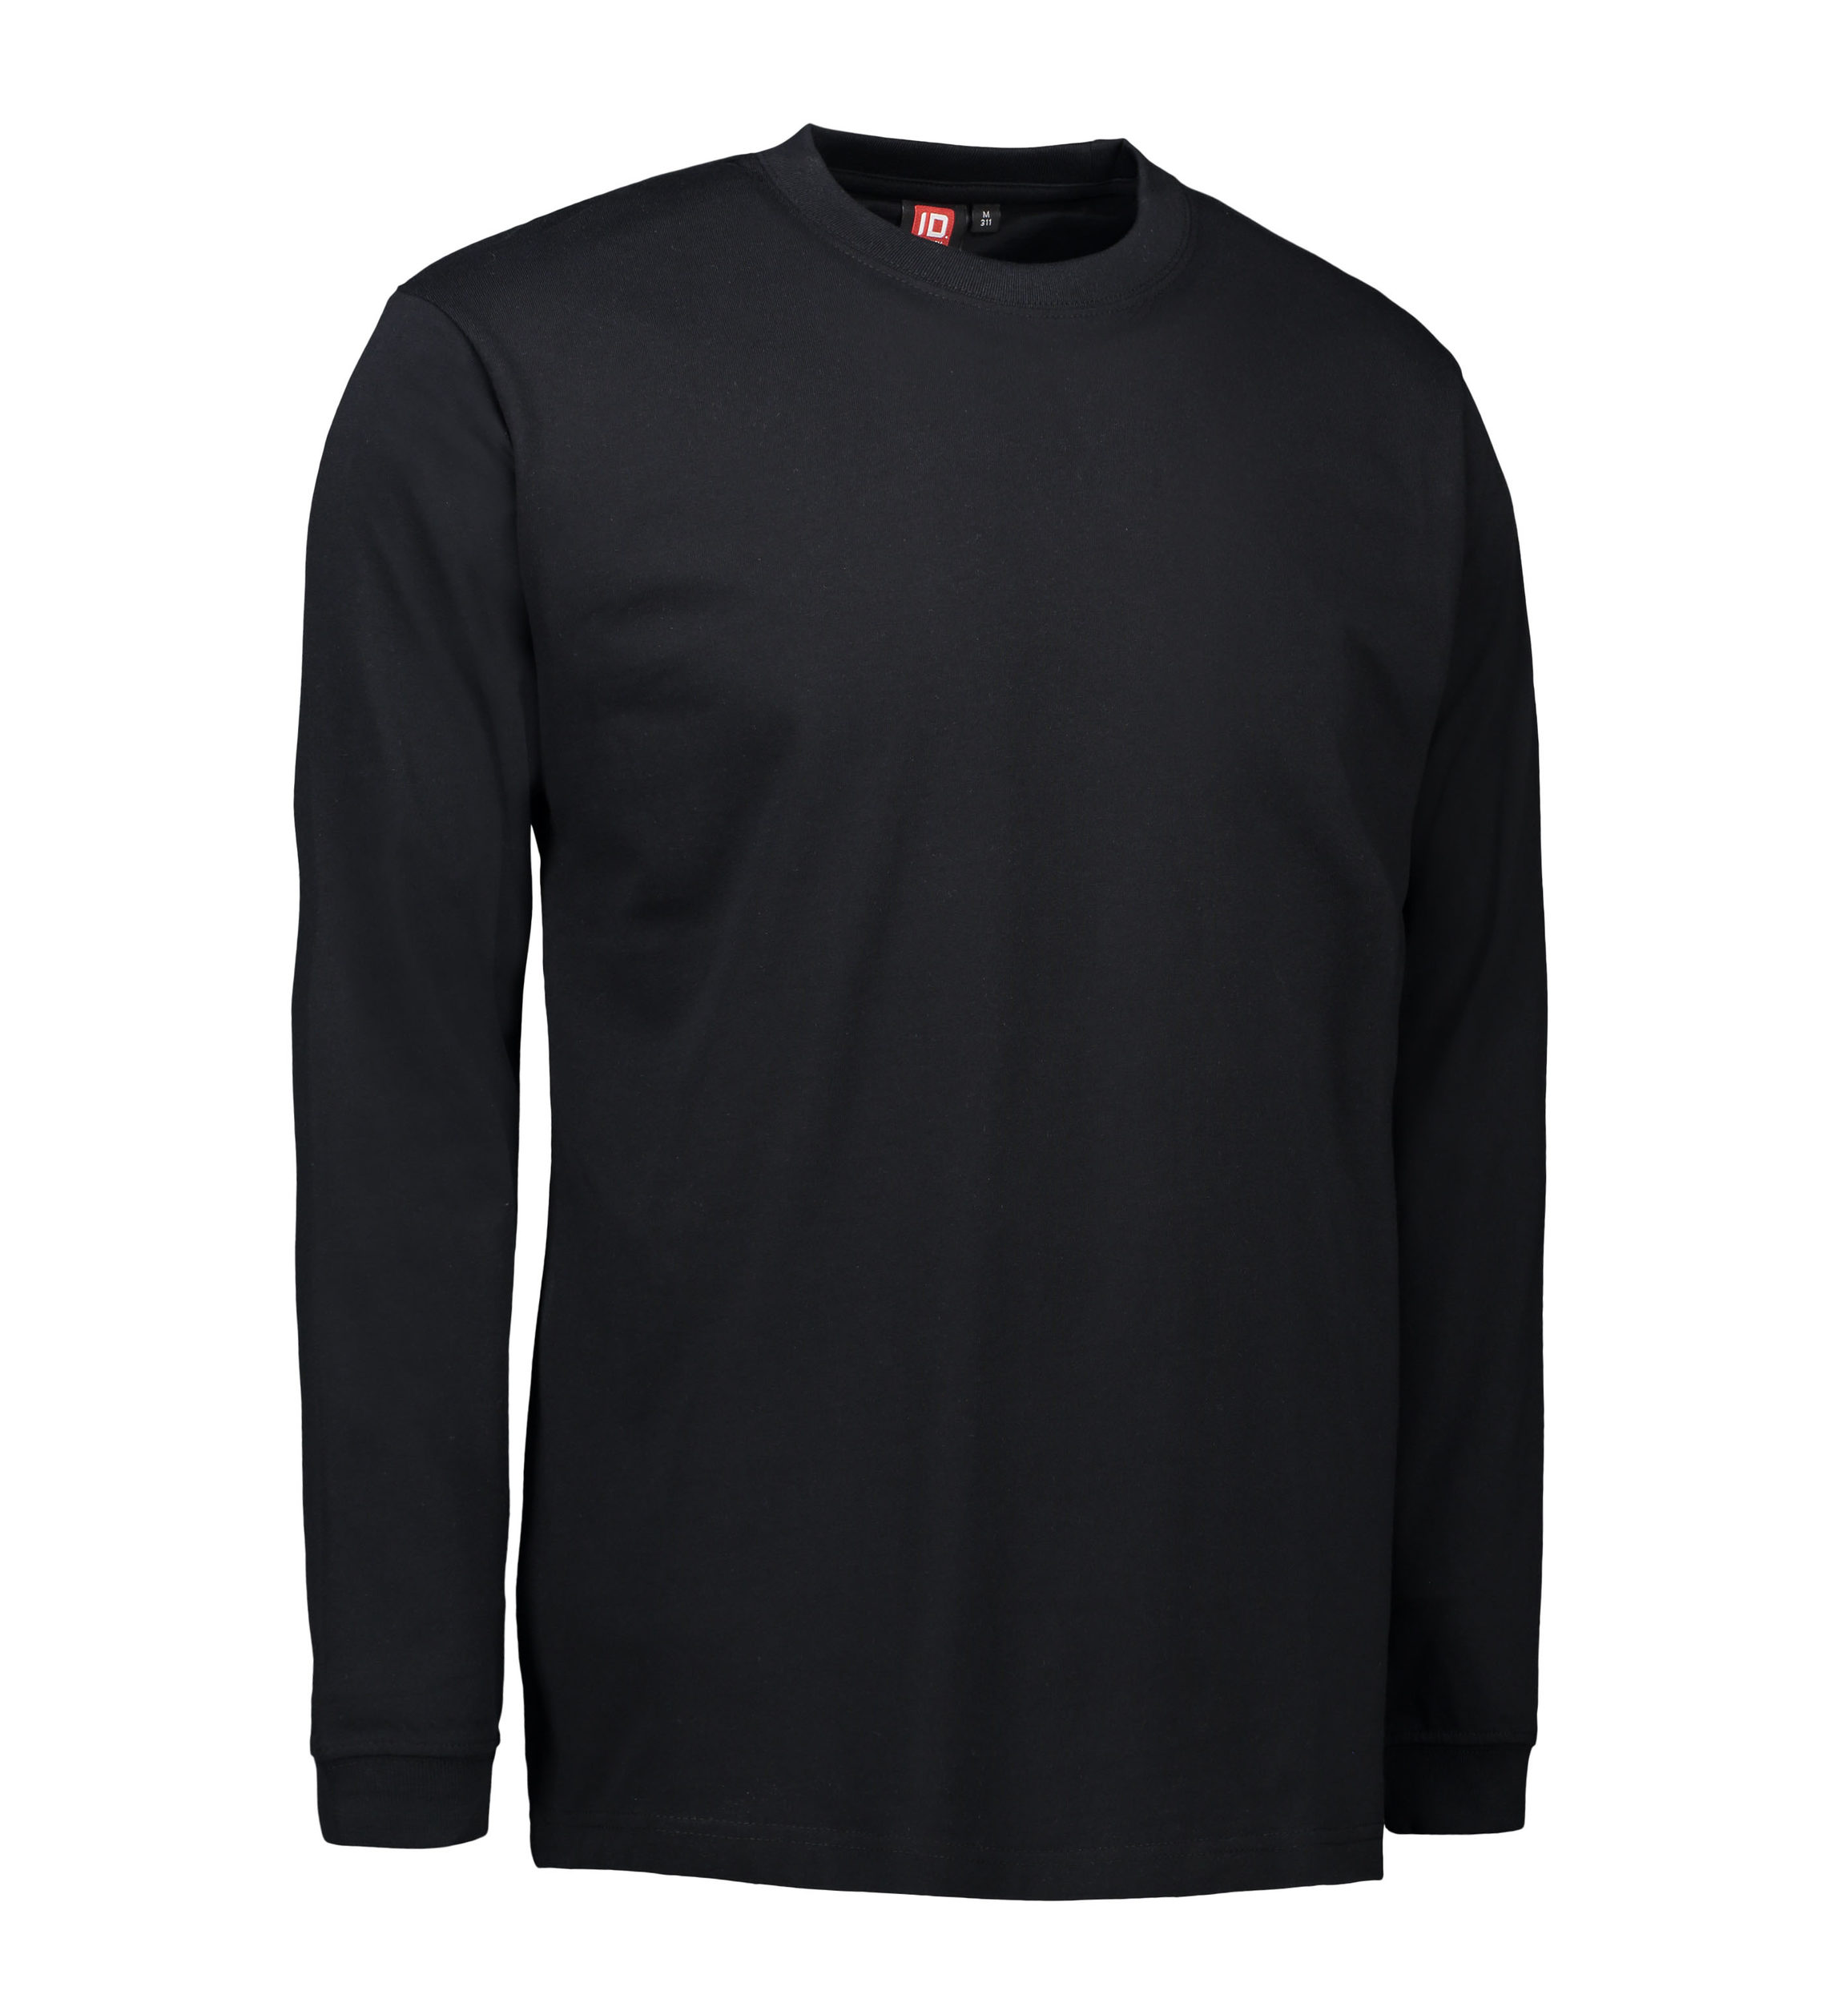 Billede af Slidstærk langærmet t-shirt til mænd i sort - XL hos Sygeplejebutikken.dk